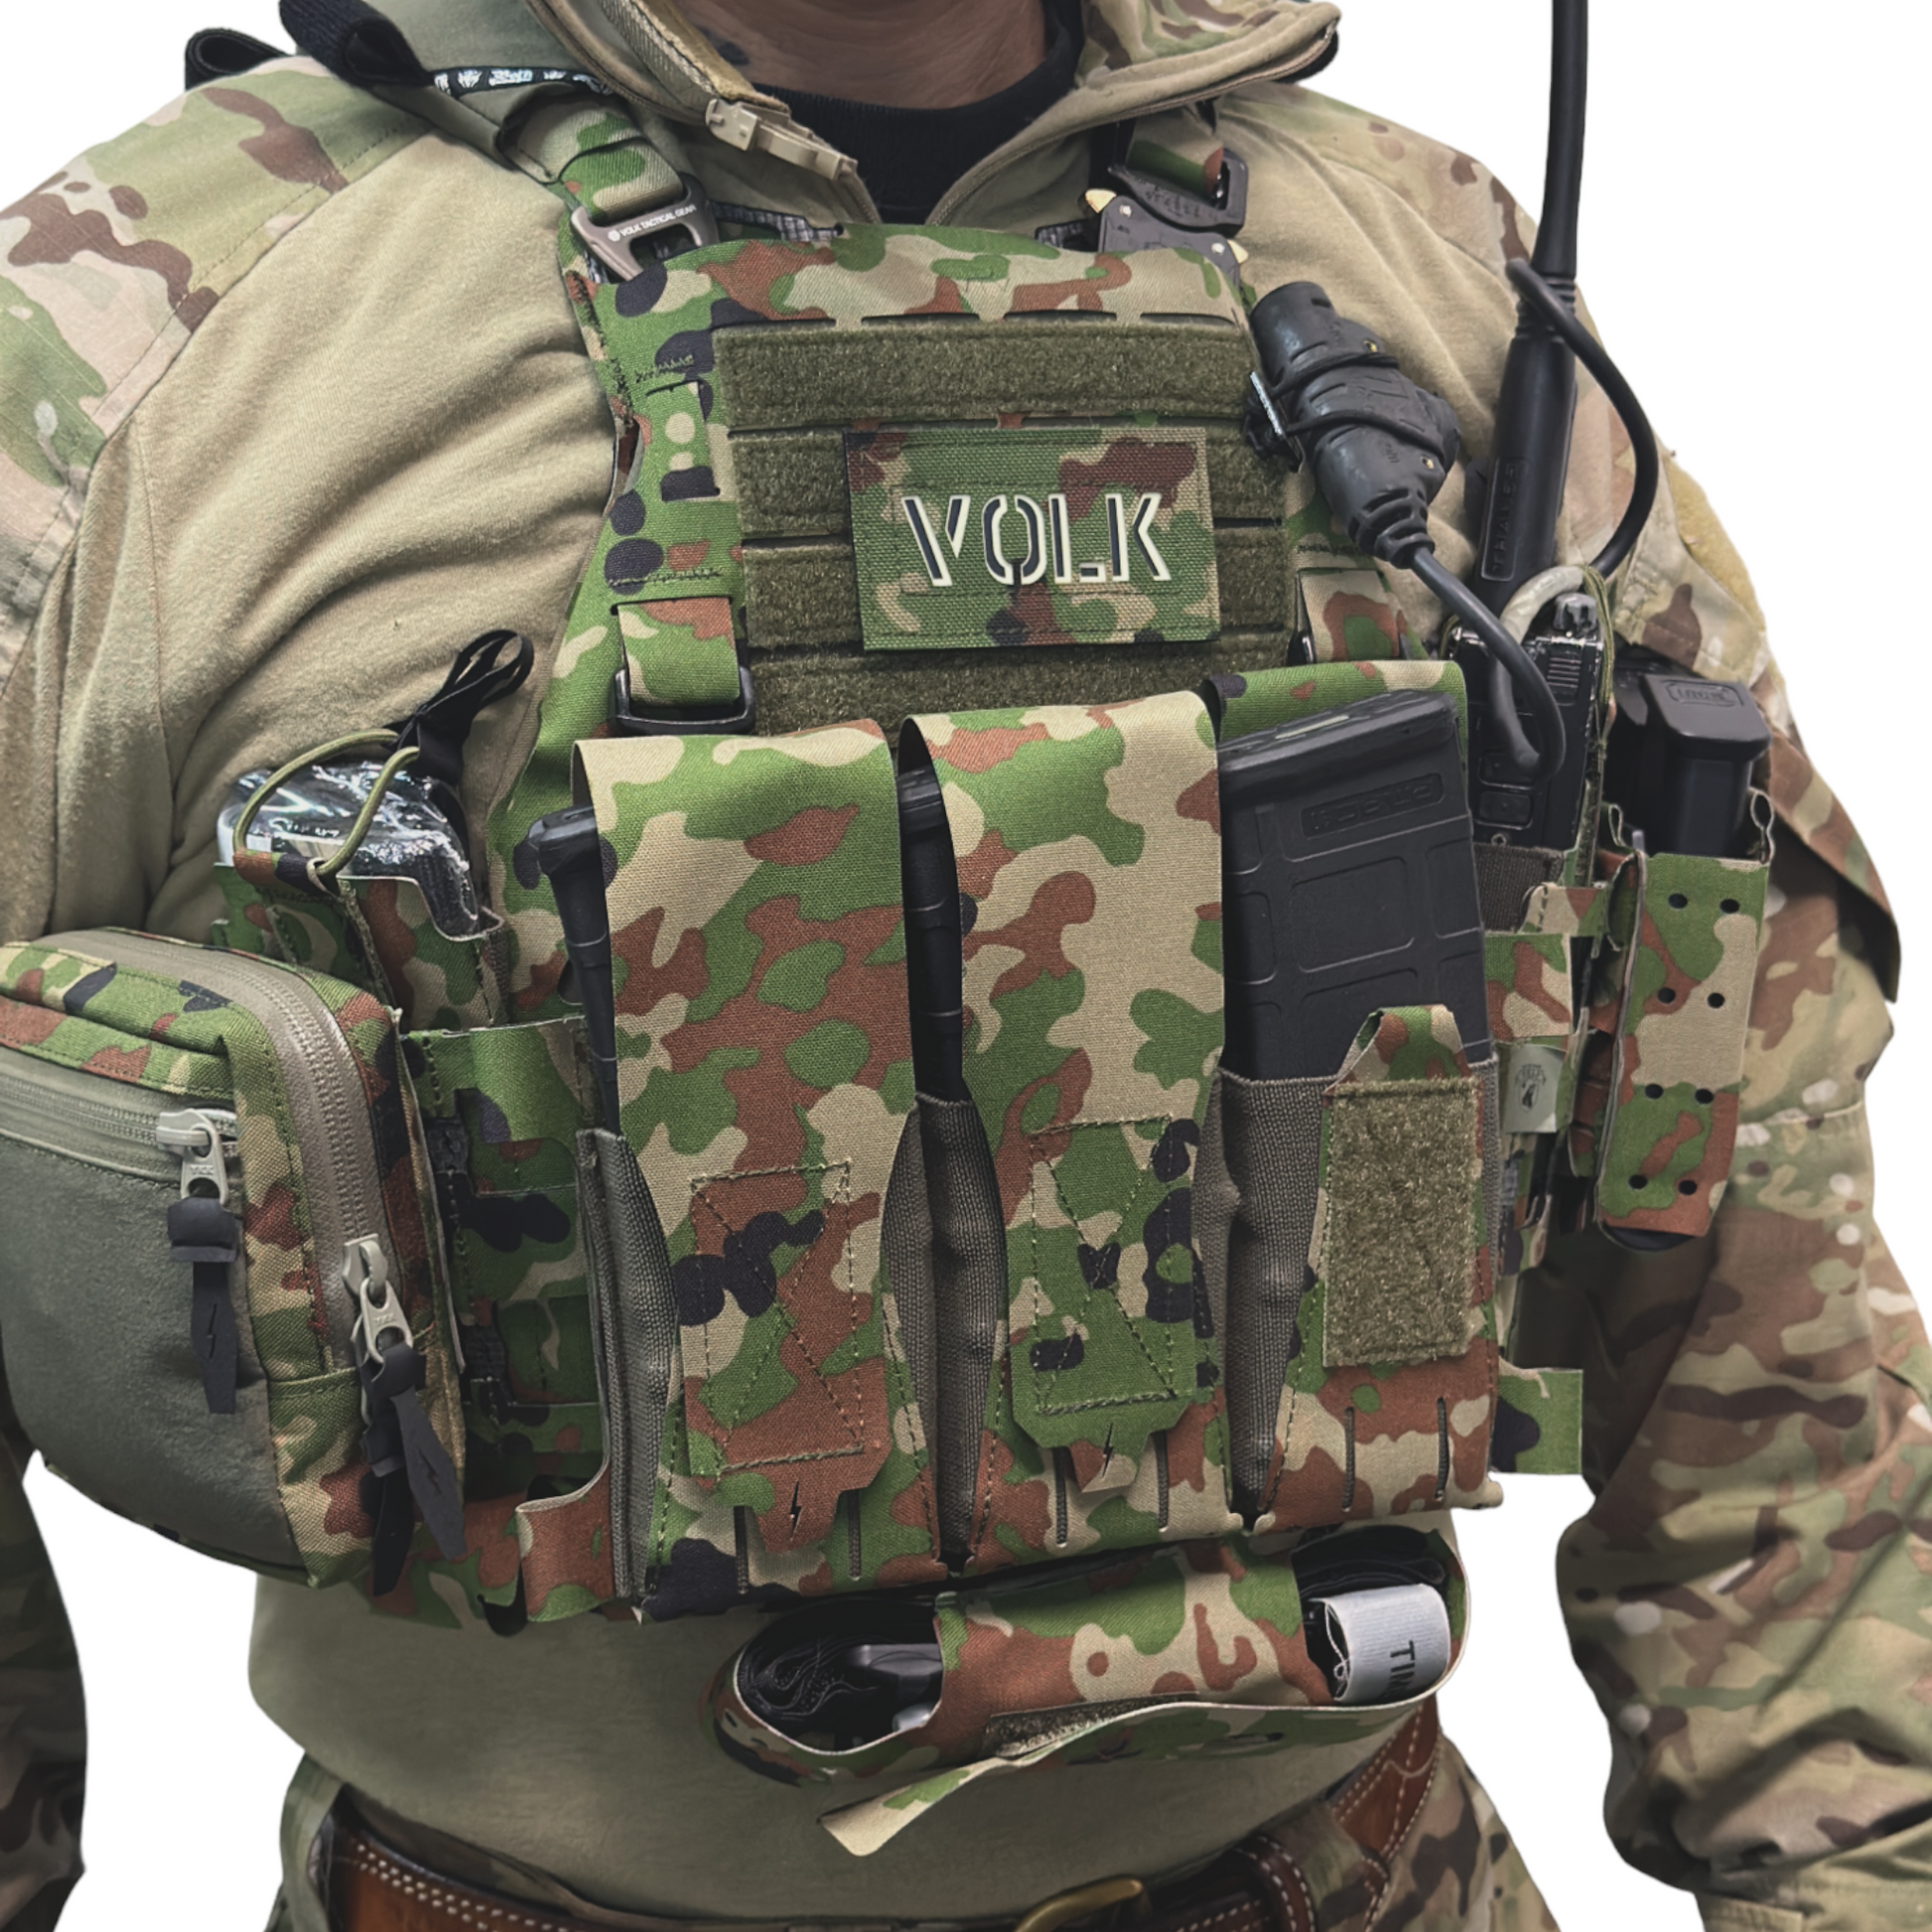 V-DPC/M4 – VOLK TACTICAL GEAR